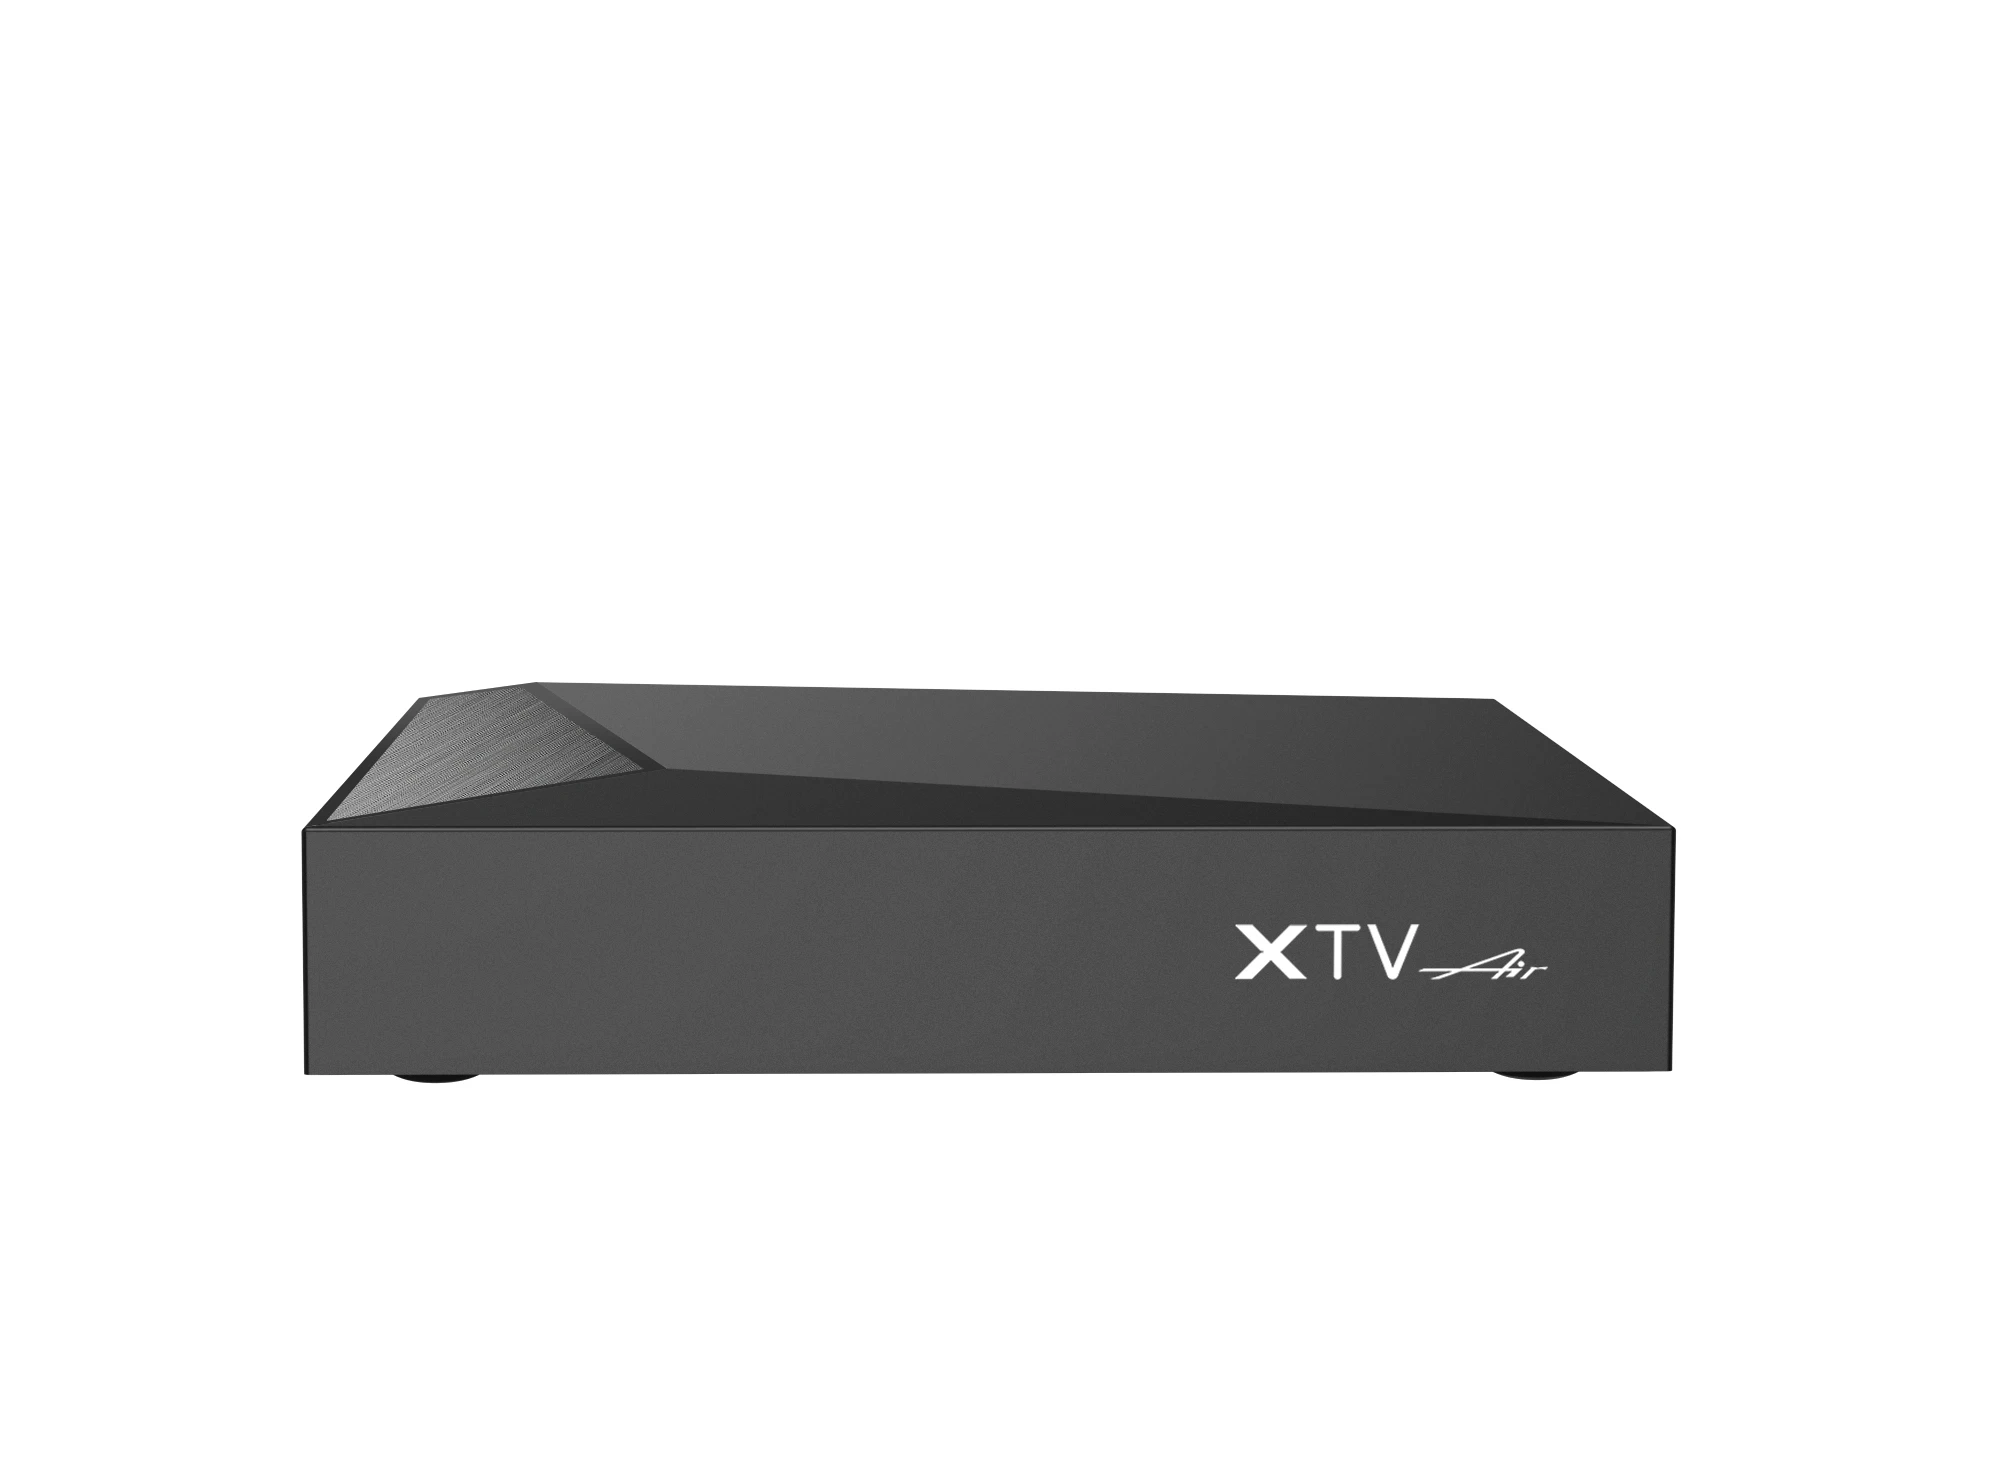 XTV Air новая умная ТВ-приставка Amlogic S905W2 четырехъядерная 1,8 ГГц 4K HDR + BT HD LAN 100M AV1 Смарт ТВ-приставка XTVAIR